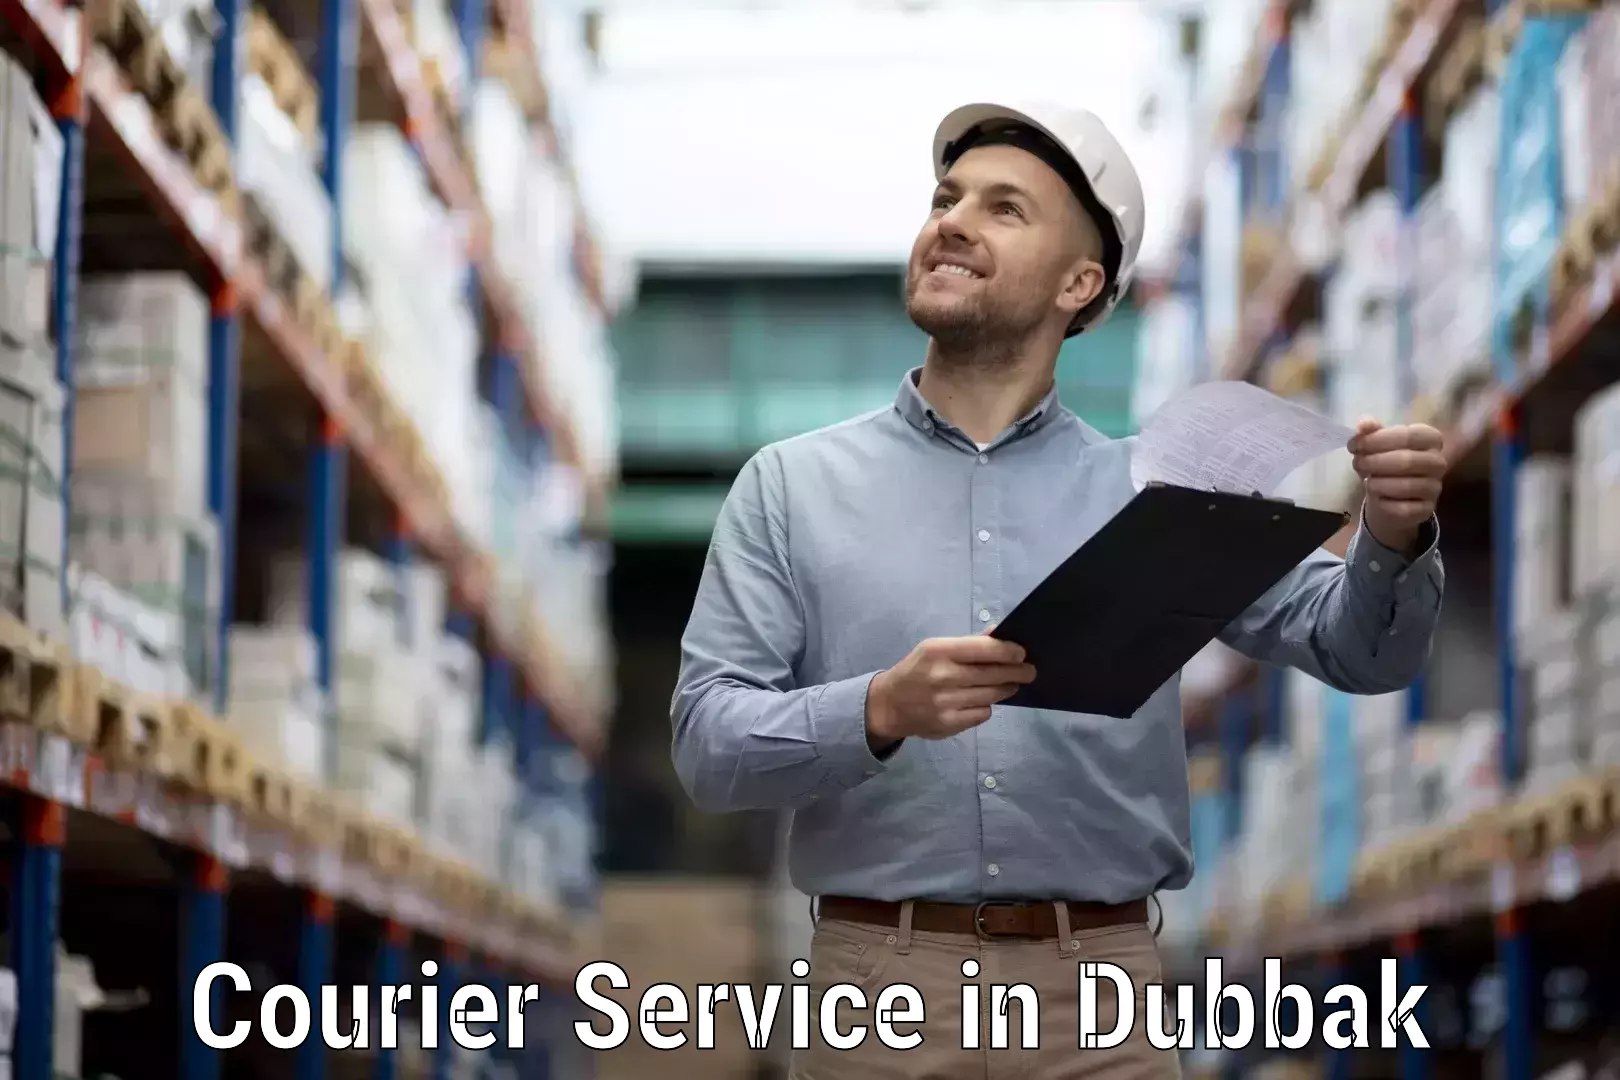 Nationwide courier service in Dubbak